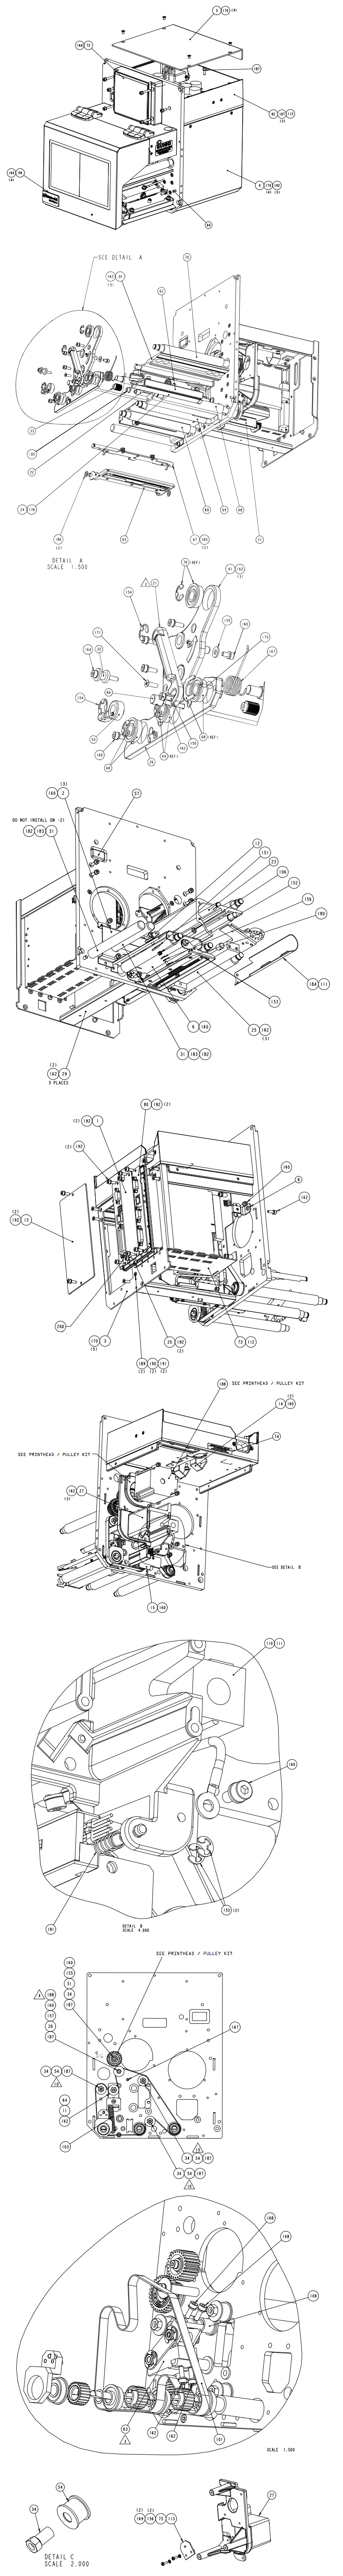 печатающий механизм datamax